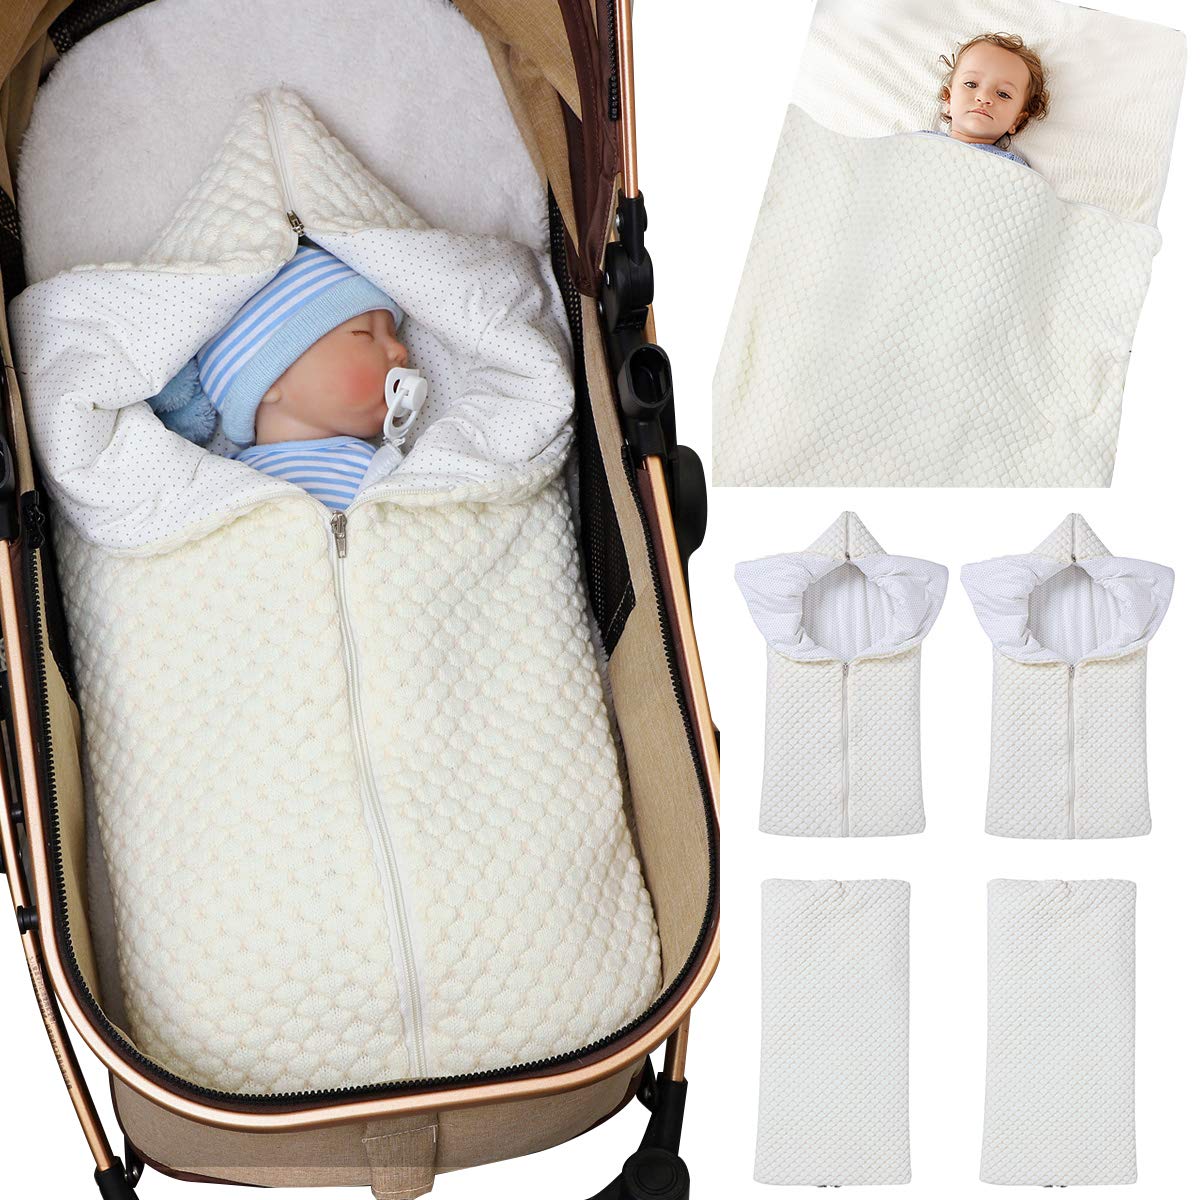 Baby Wrap Wickeldecke Strick Schlafsack Kinderwagen Wrap Weich Warm für 0-12 Monate Babys Unisex (Beige)